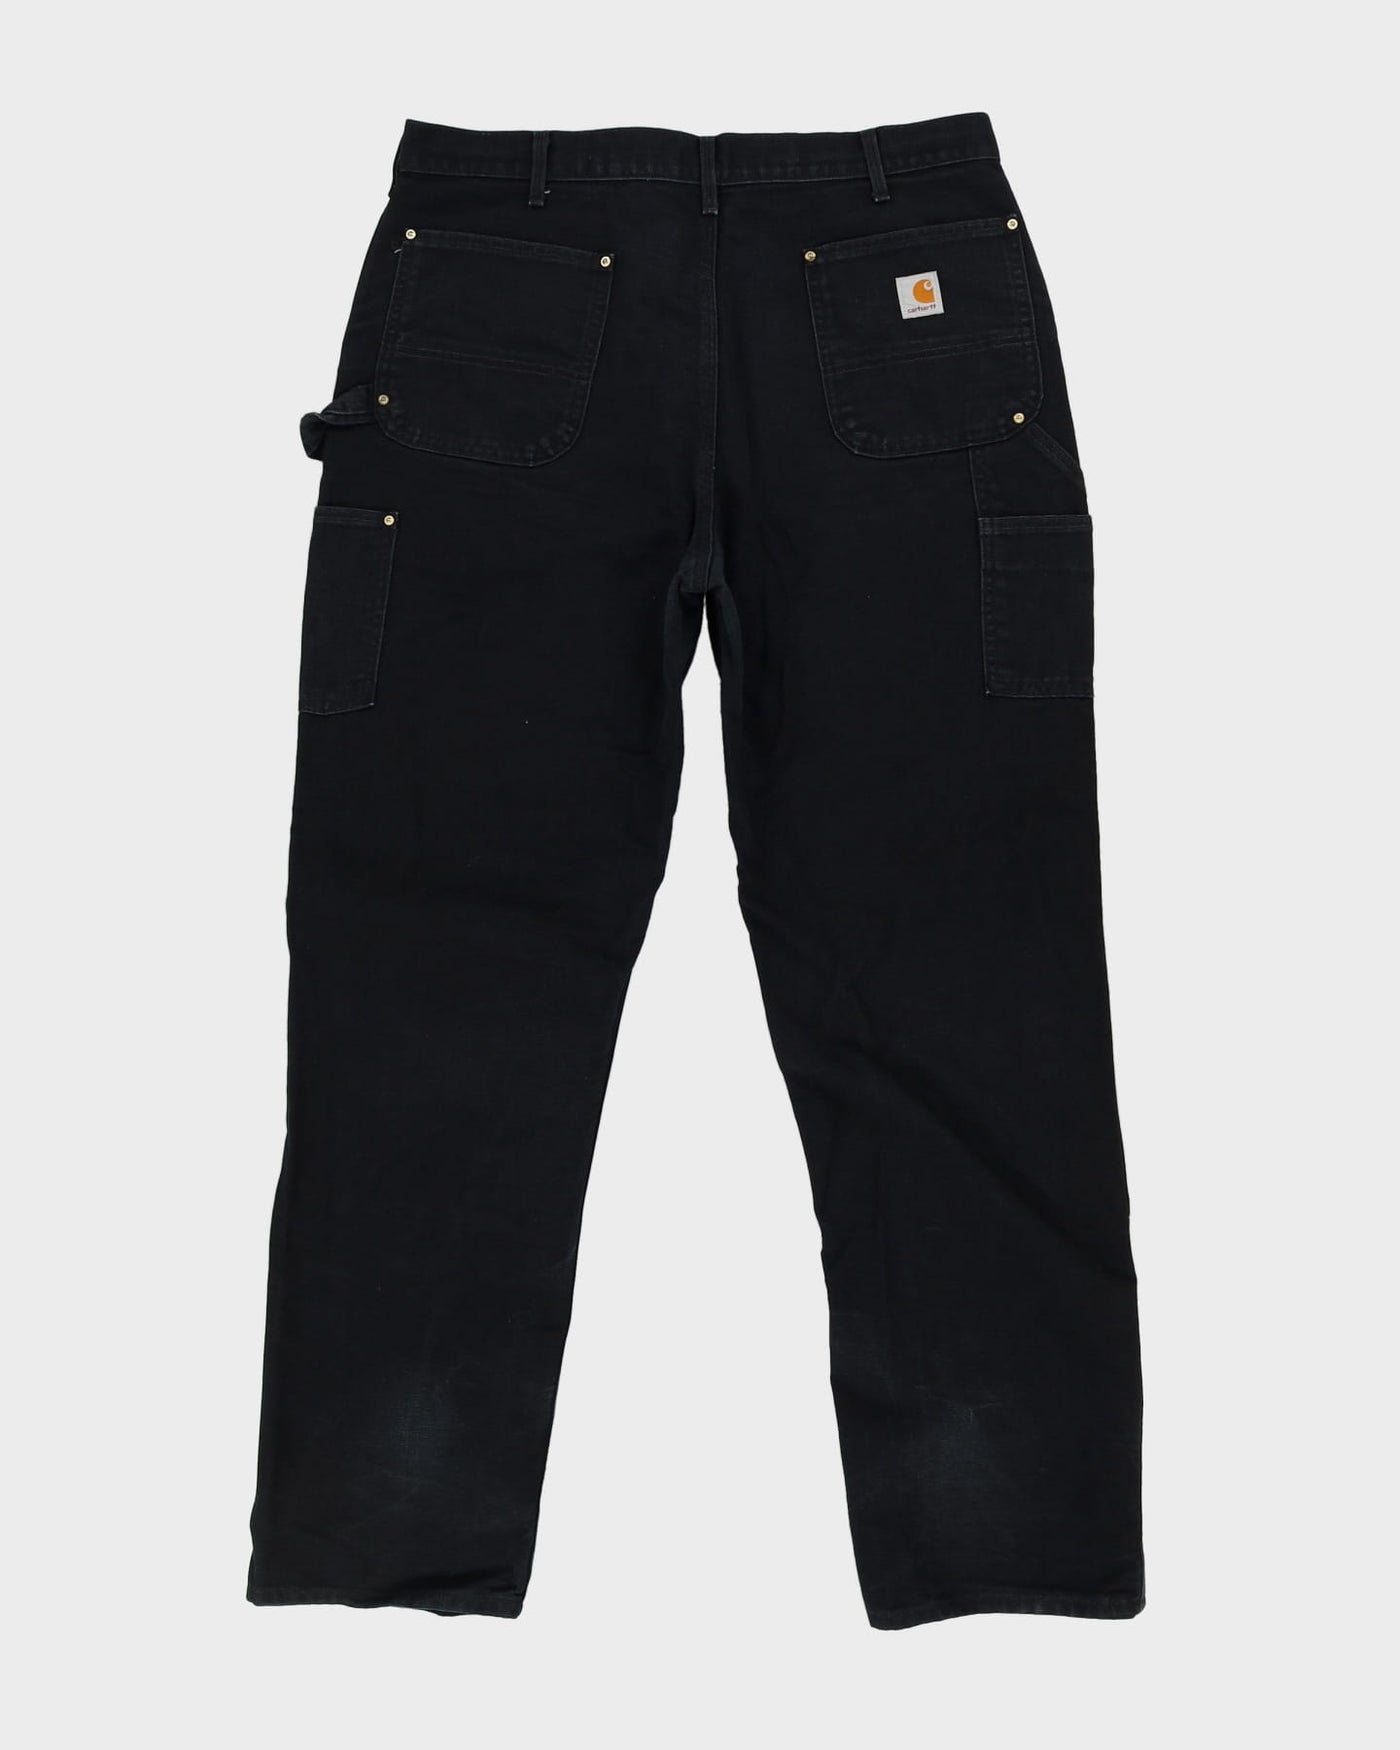 Vintage 90s Carhartt Black Double Knee Workwear Jeans - W38 L34